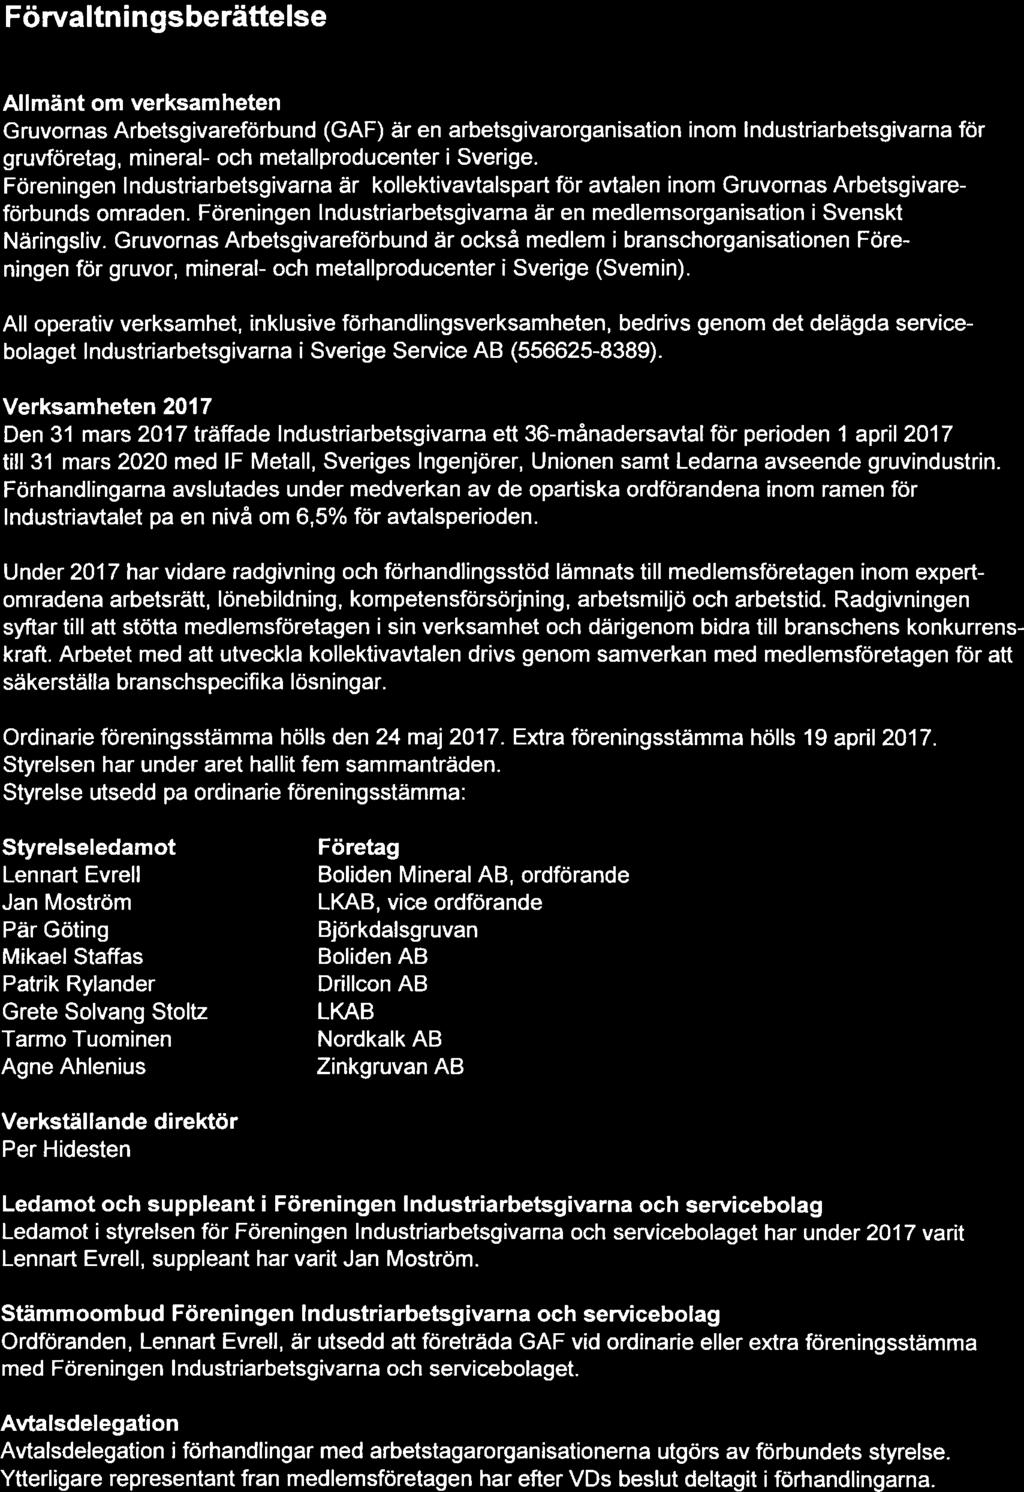 2 (9) Förvaltningsberättelse Allmänt om verksamheten (GAF) är en arbetsgivarorganisation inom lndustriarbetsgivarna för gruvföretag, mineral- och metallproducenter i Sverige.